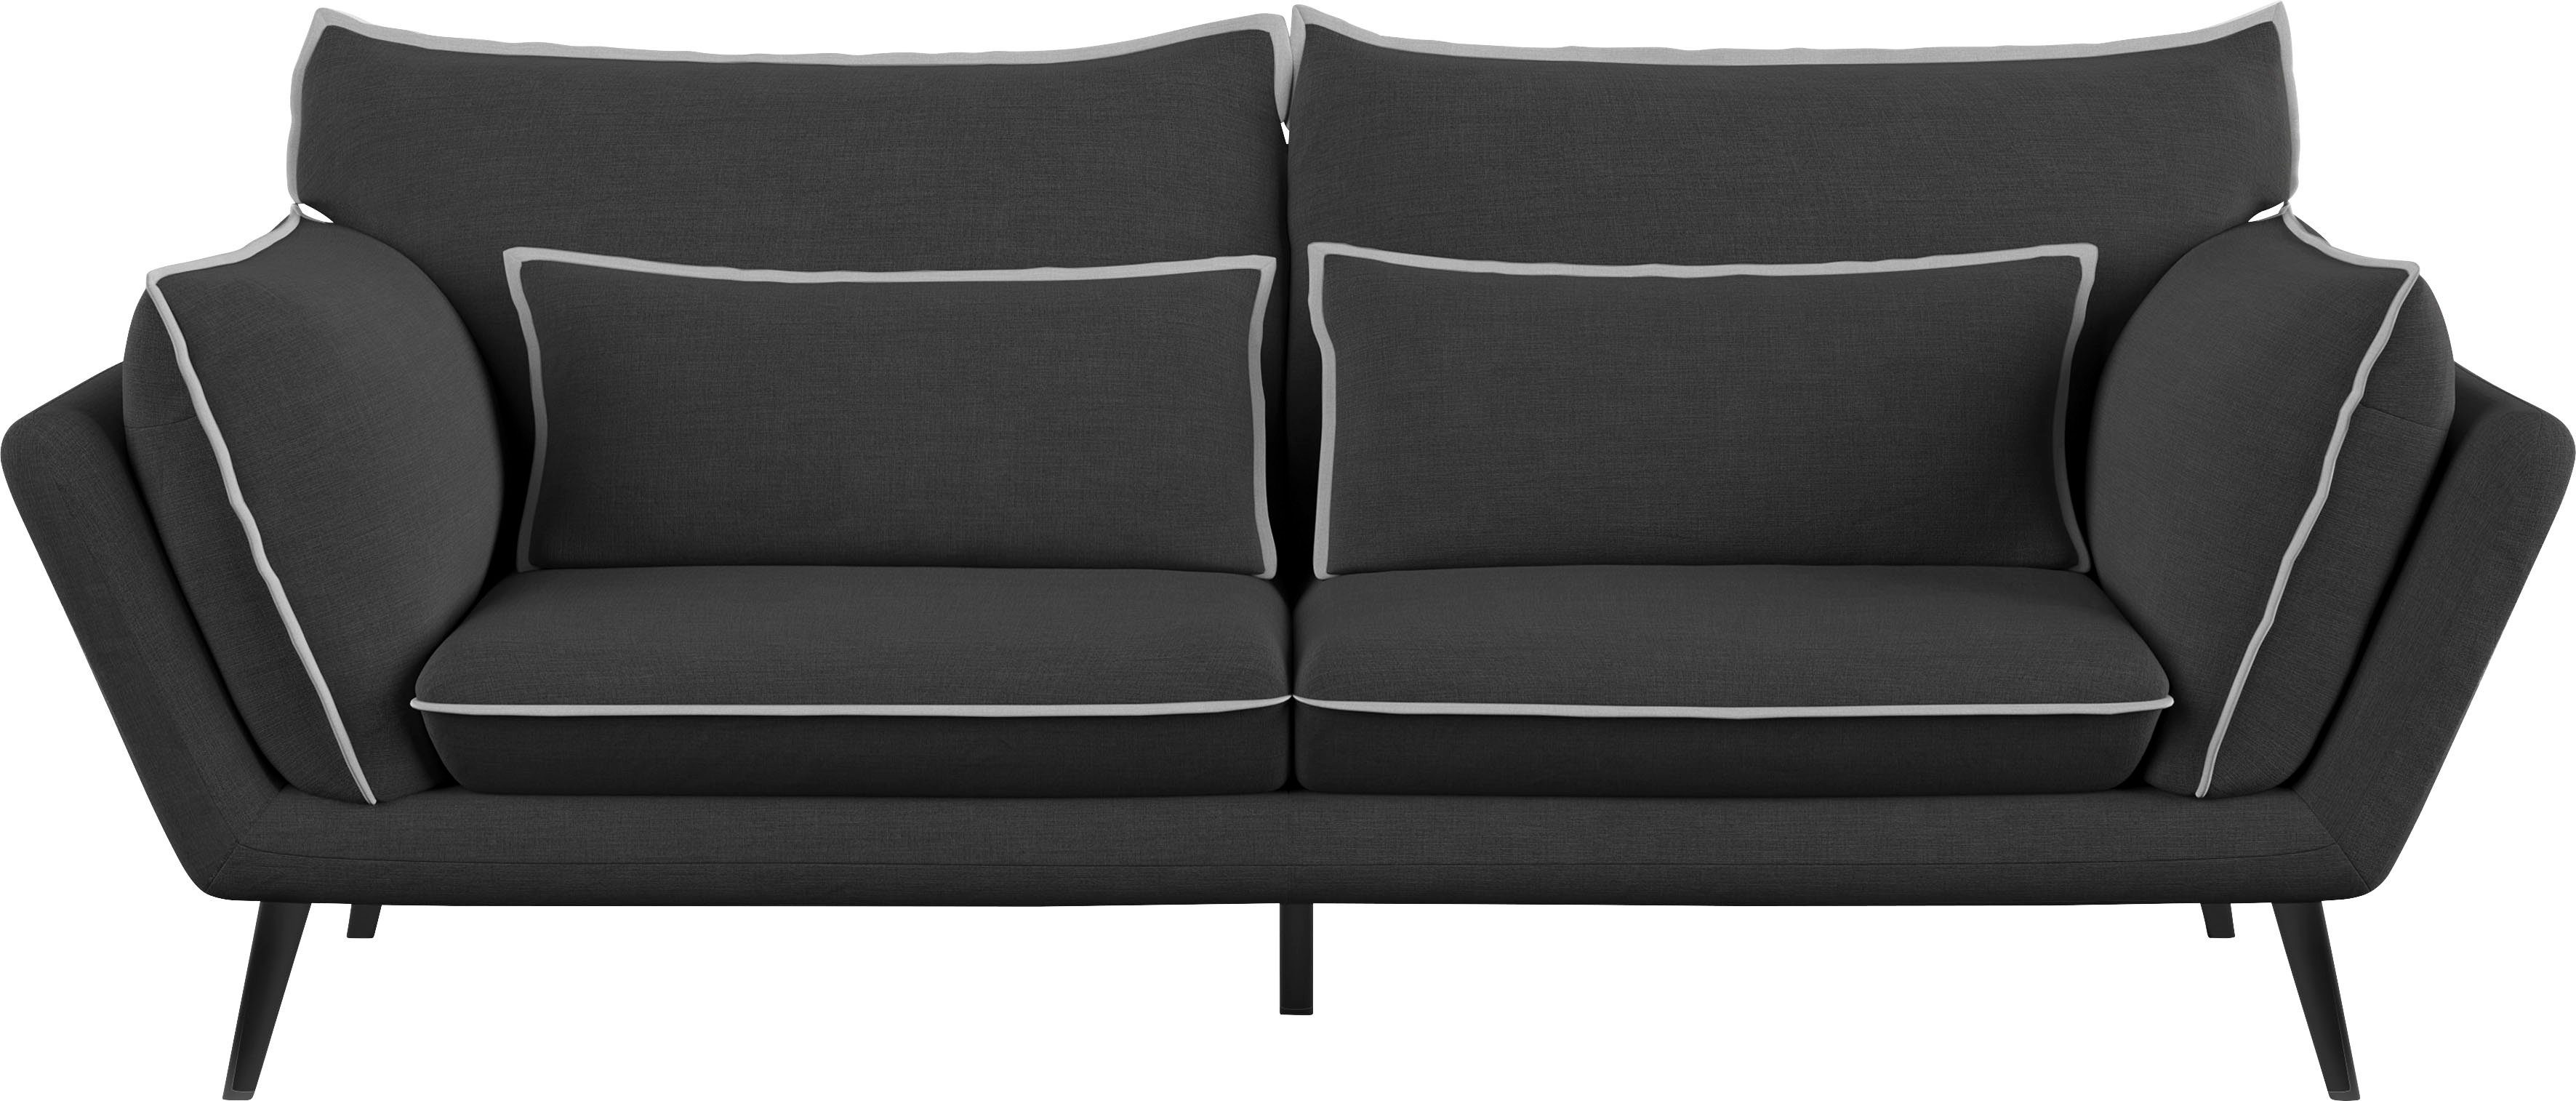 Sofa 2021 ausgezeichnet SPECIAL GERMAN Mara, DESIGN dem mit Leonique AWARD 3-Sitzer,